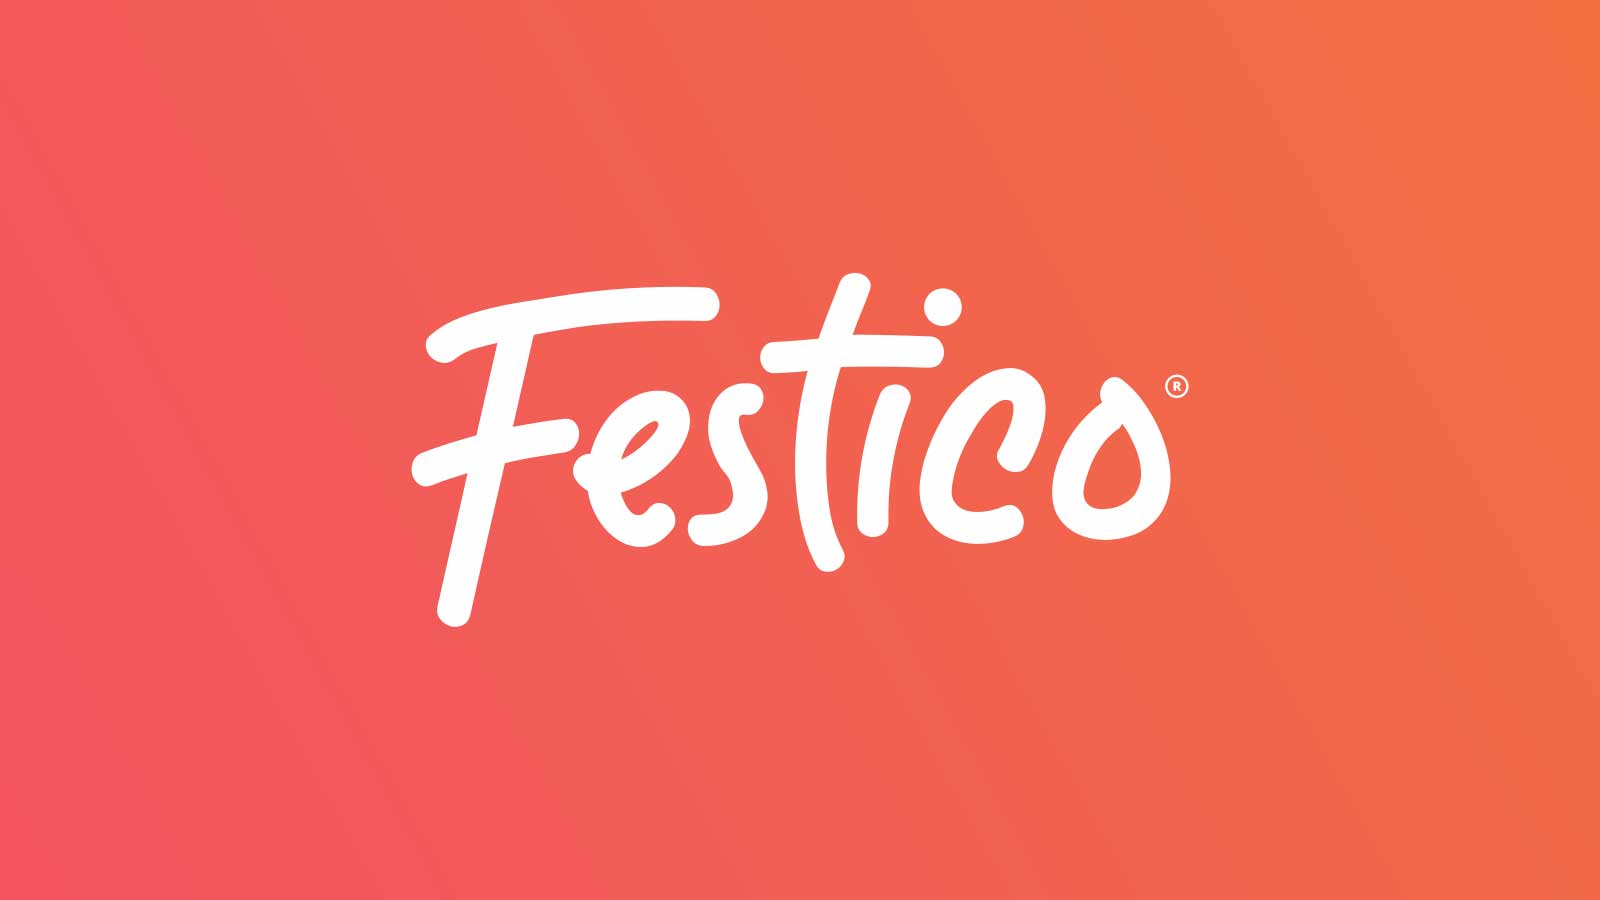 Festico logo